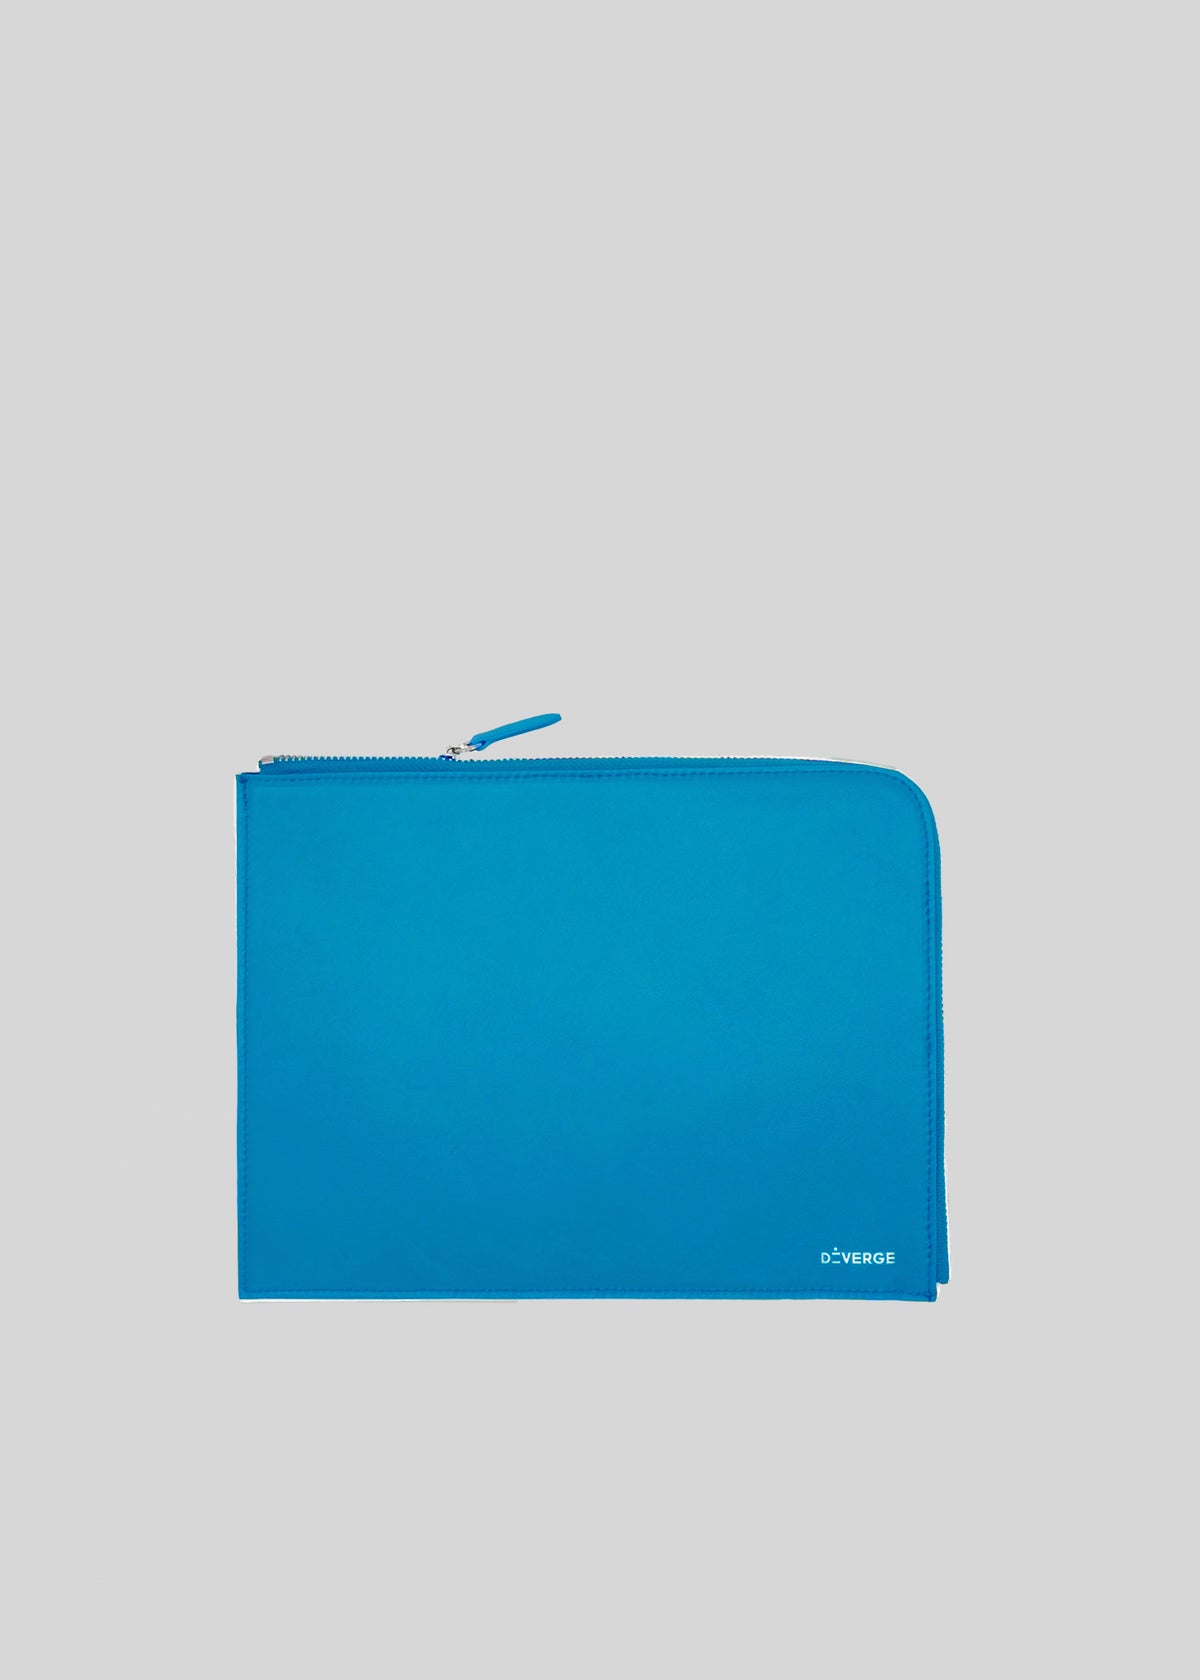 Portefeuille à fermeture éclair M Leather Pouch bleu vif avec le nom de la marque "ateveros" imprimé en minuscules dans le coin inférieur droit.